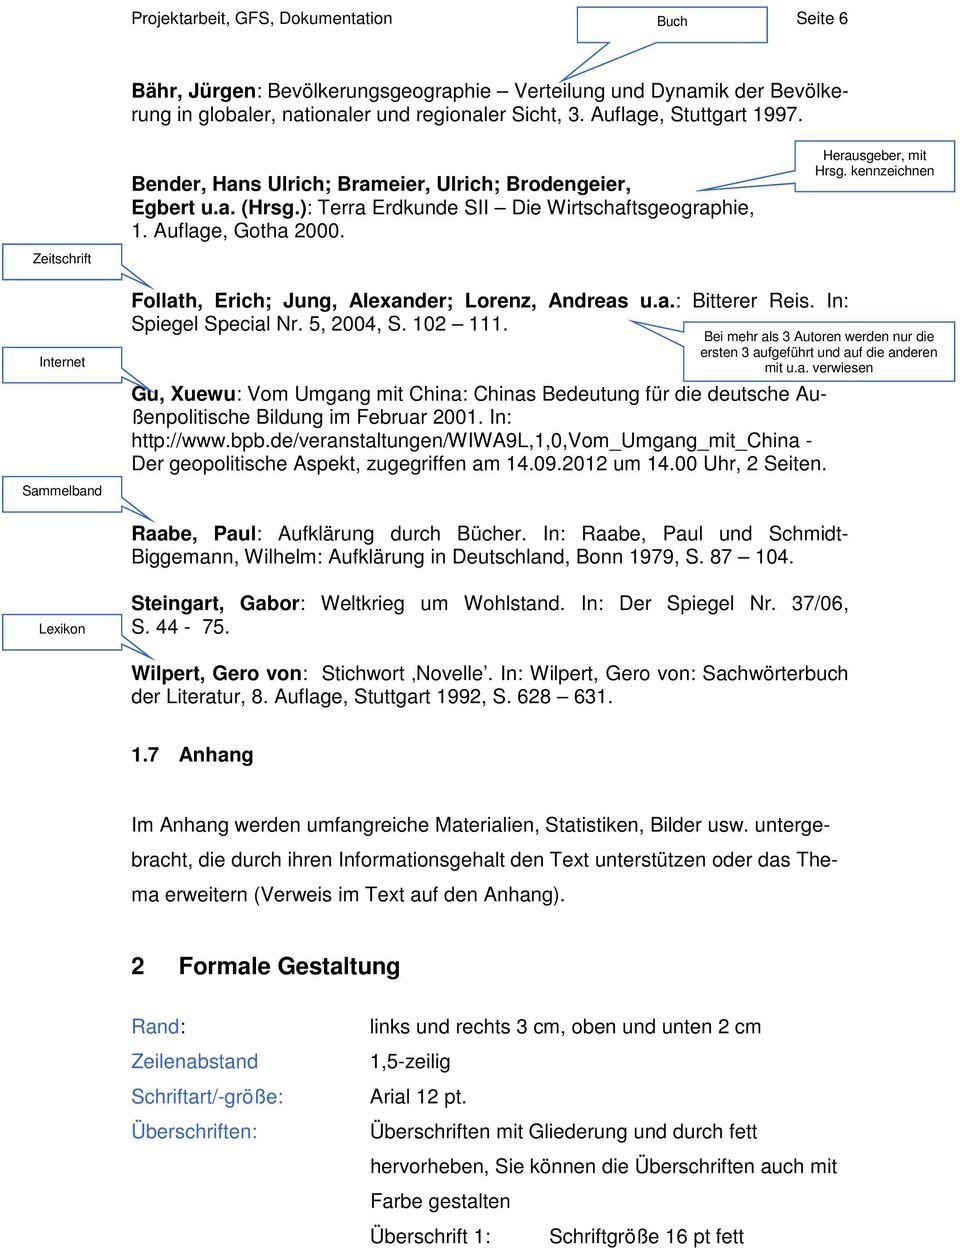 kennzeichnen Internet Sammelband Follath, Erich; Jung, Alexander; Lorenz, Andreas u.a.: Bitterer Reis. In: Spiegel Special Nr. 5, 2004, S. 102 111.